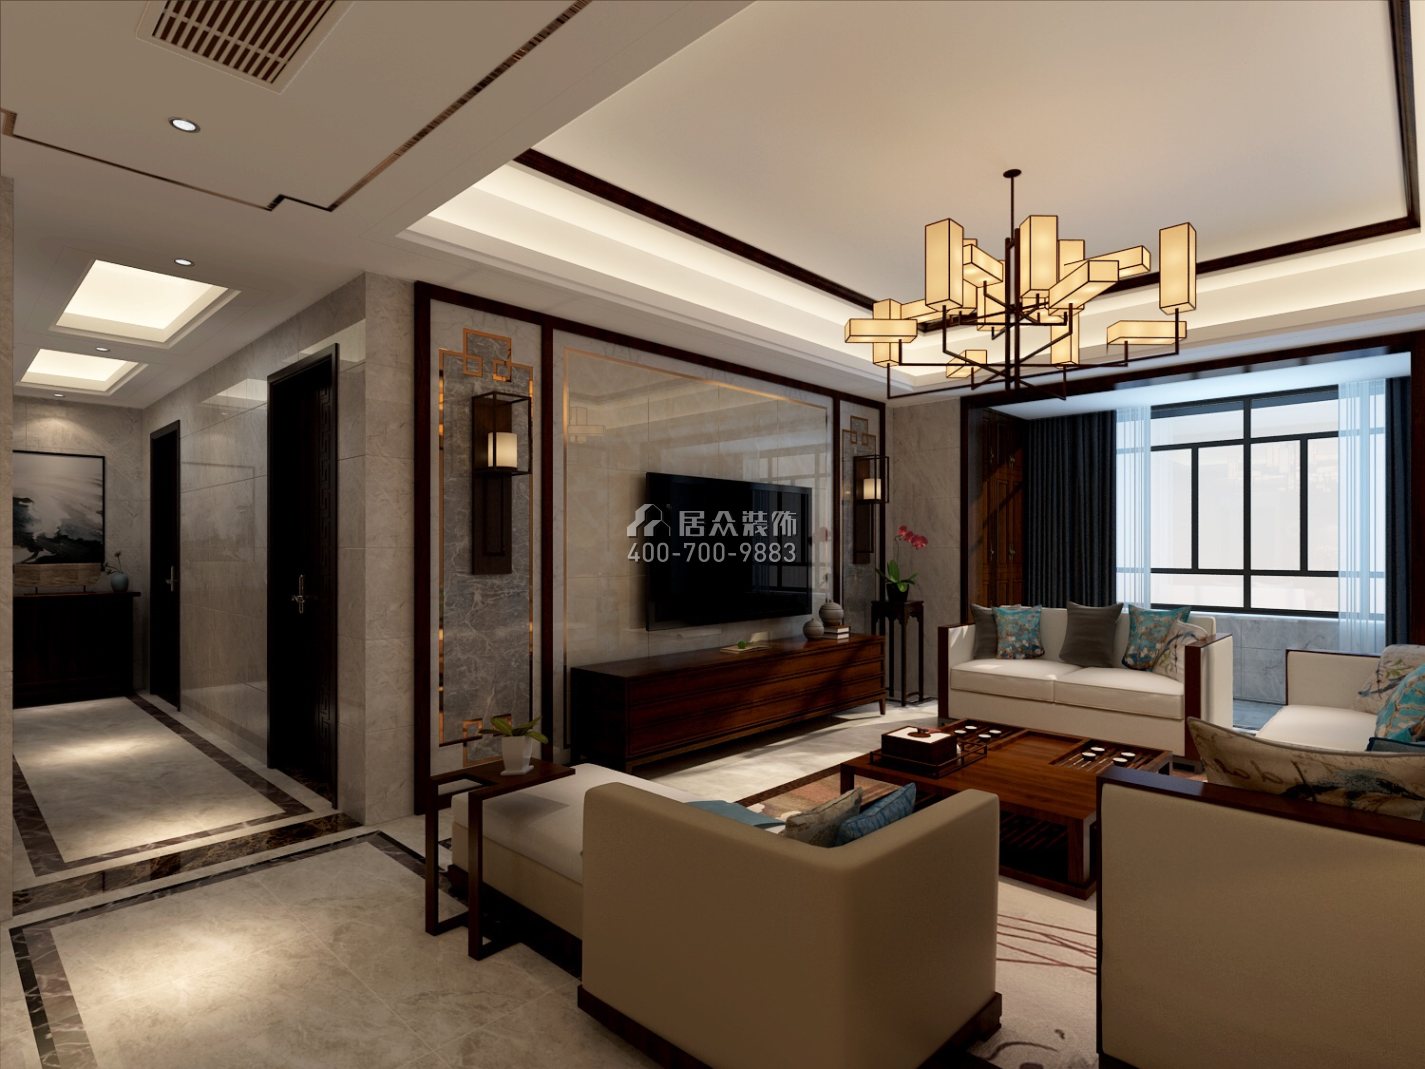 紫御华庭140平方米中式风格平层户型客厅装修效果图